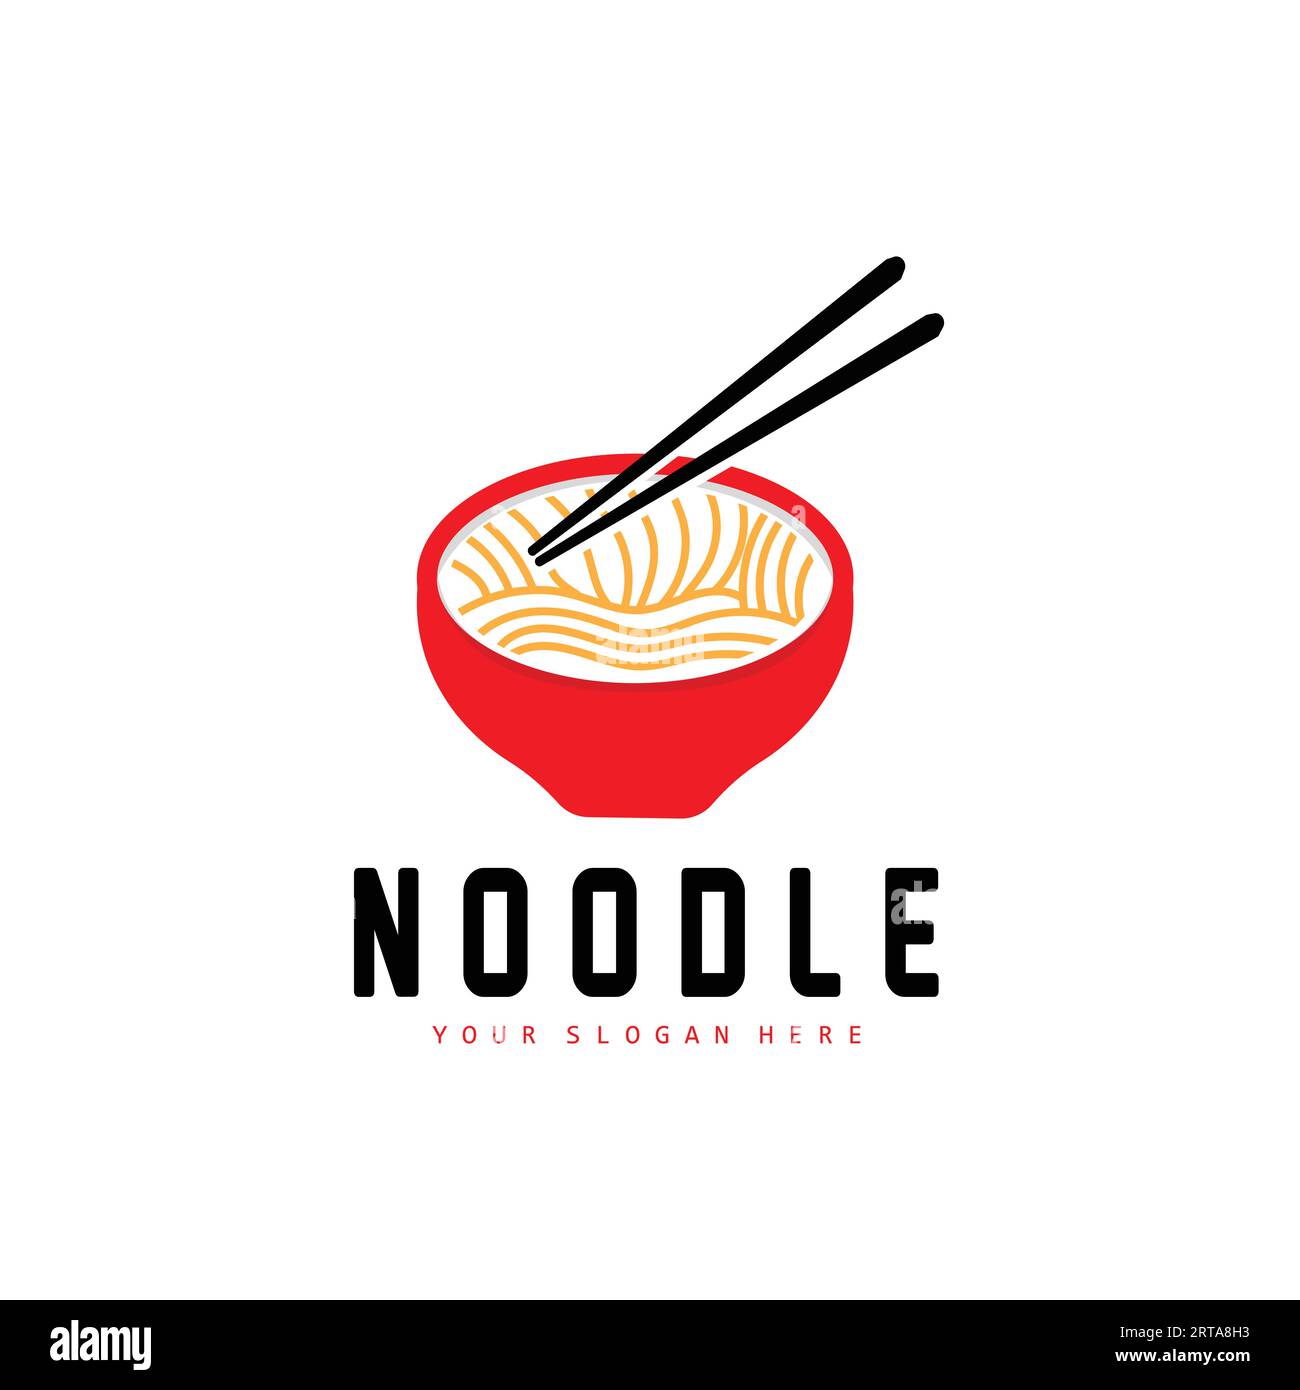 Logo Noodle, Ramen Vector, cucina cinese, design del marchio del fast food, marchio del prodotto, caffè, logo aziendale Illustrazione Vettoriale